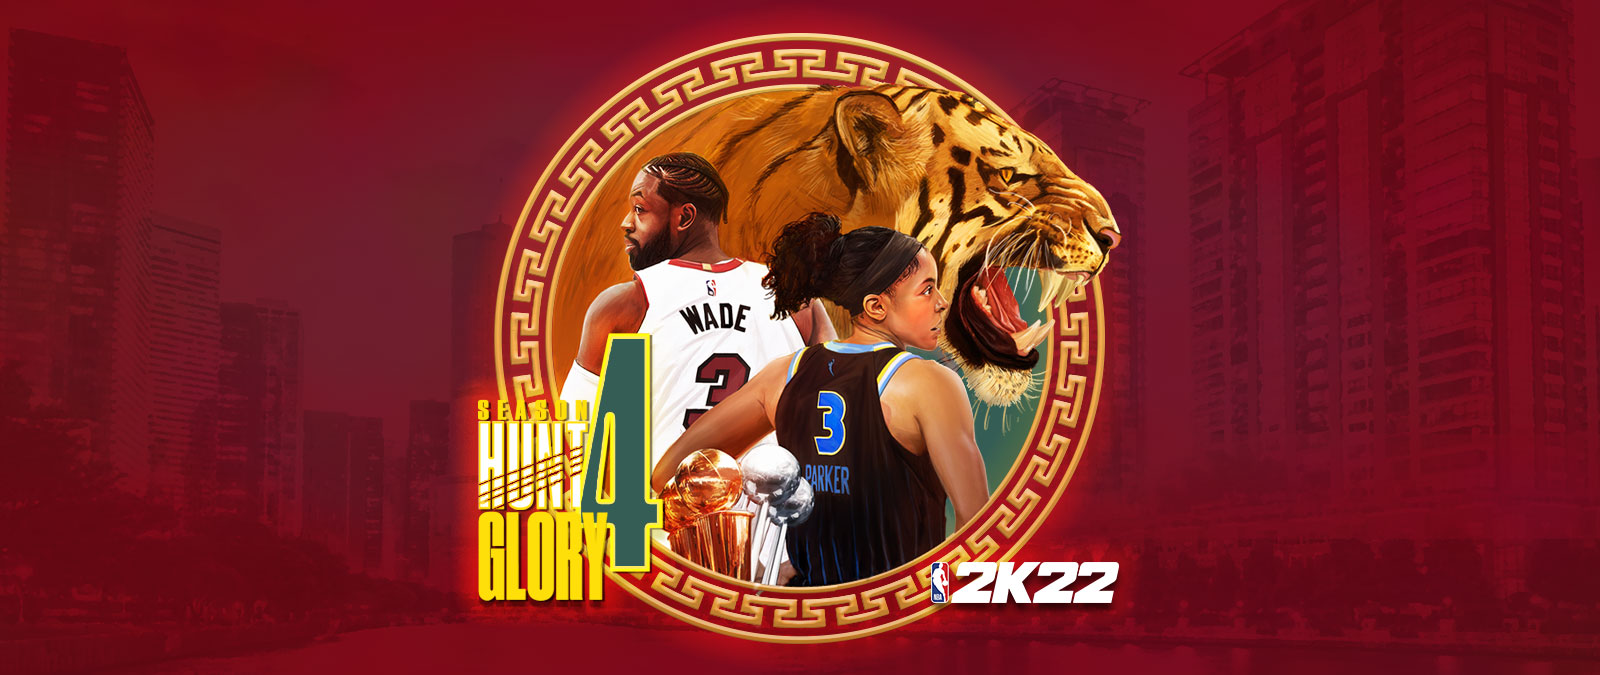 NBA 2K22, Saison 4 : Hunt 4 Glory, un élément graphique circulaire posé sur un paysage urbain aux couleurs rouges représente un tigre féroce ainsi que Dwayne Wade et Candace Parker qui ont le dos tourné. 